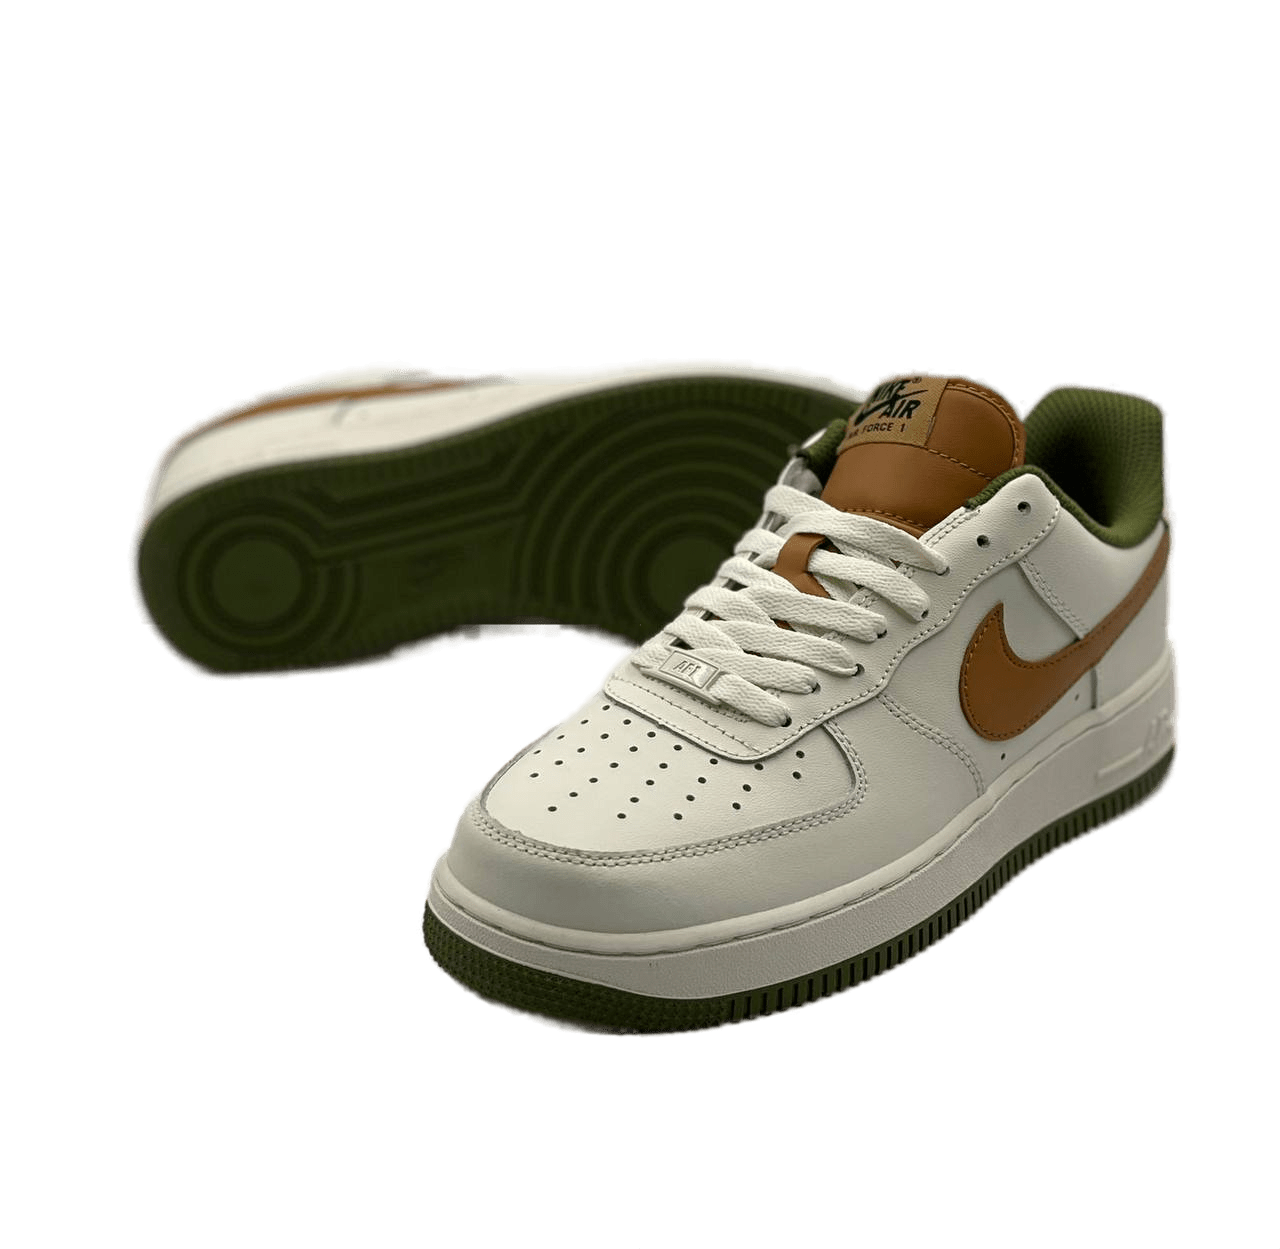  Nike Air Force 1 low Beige/Green/Brown